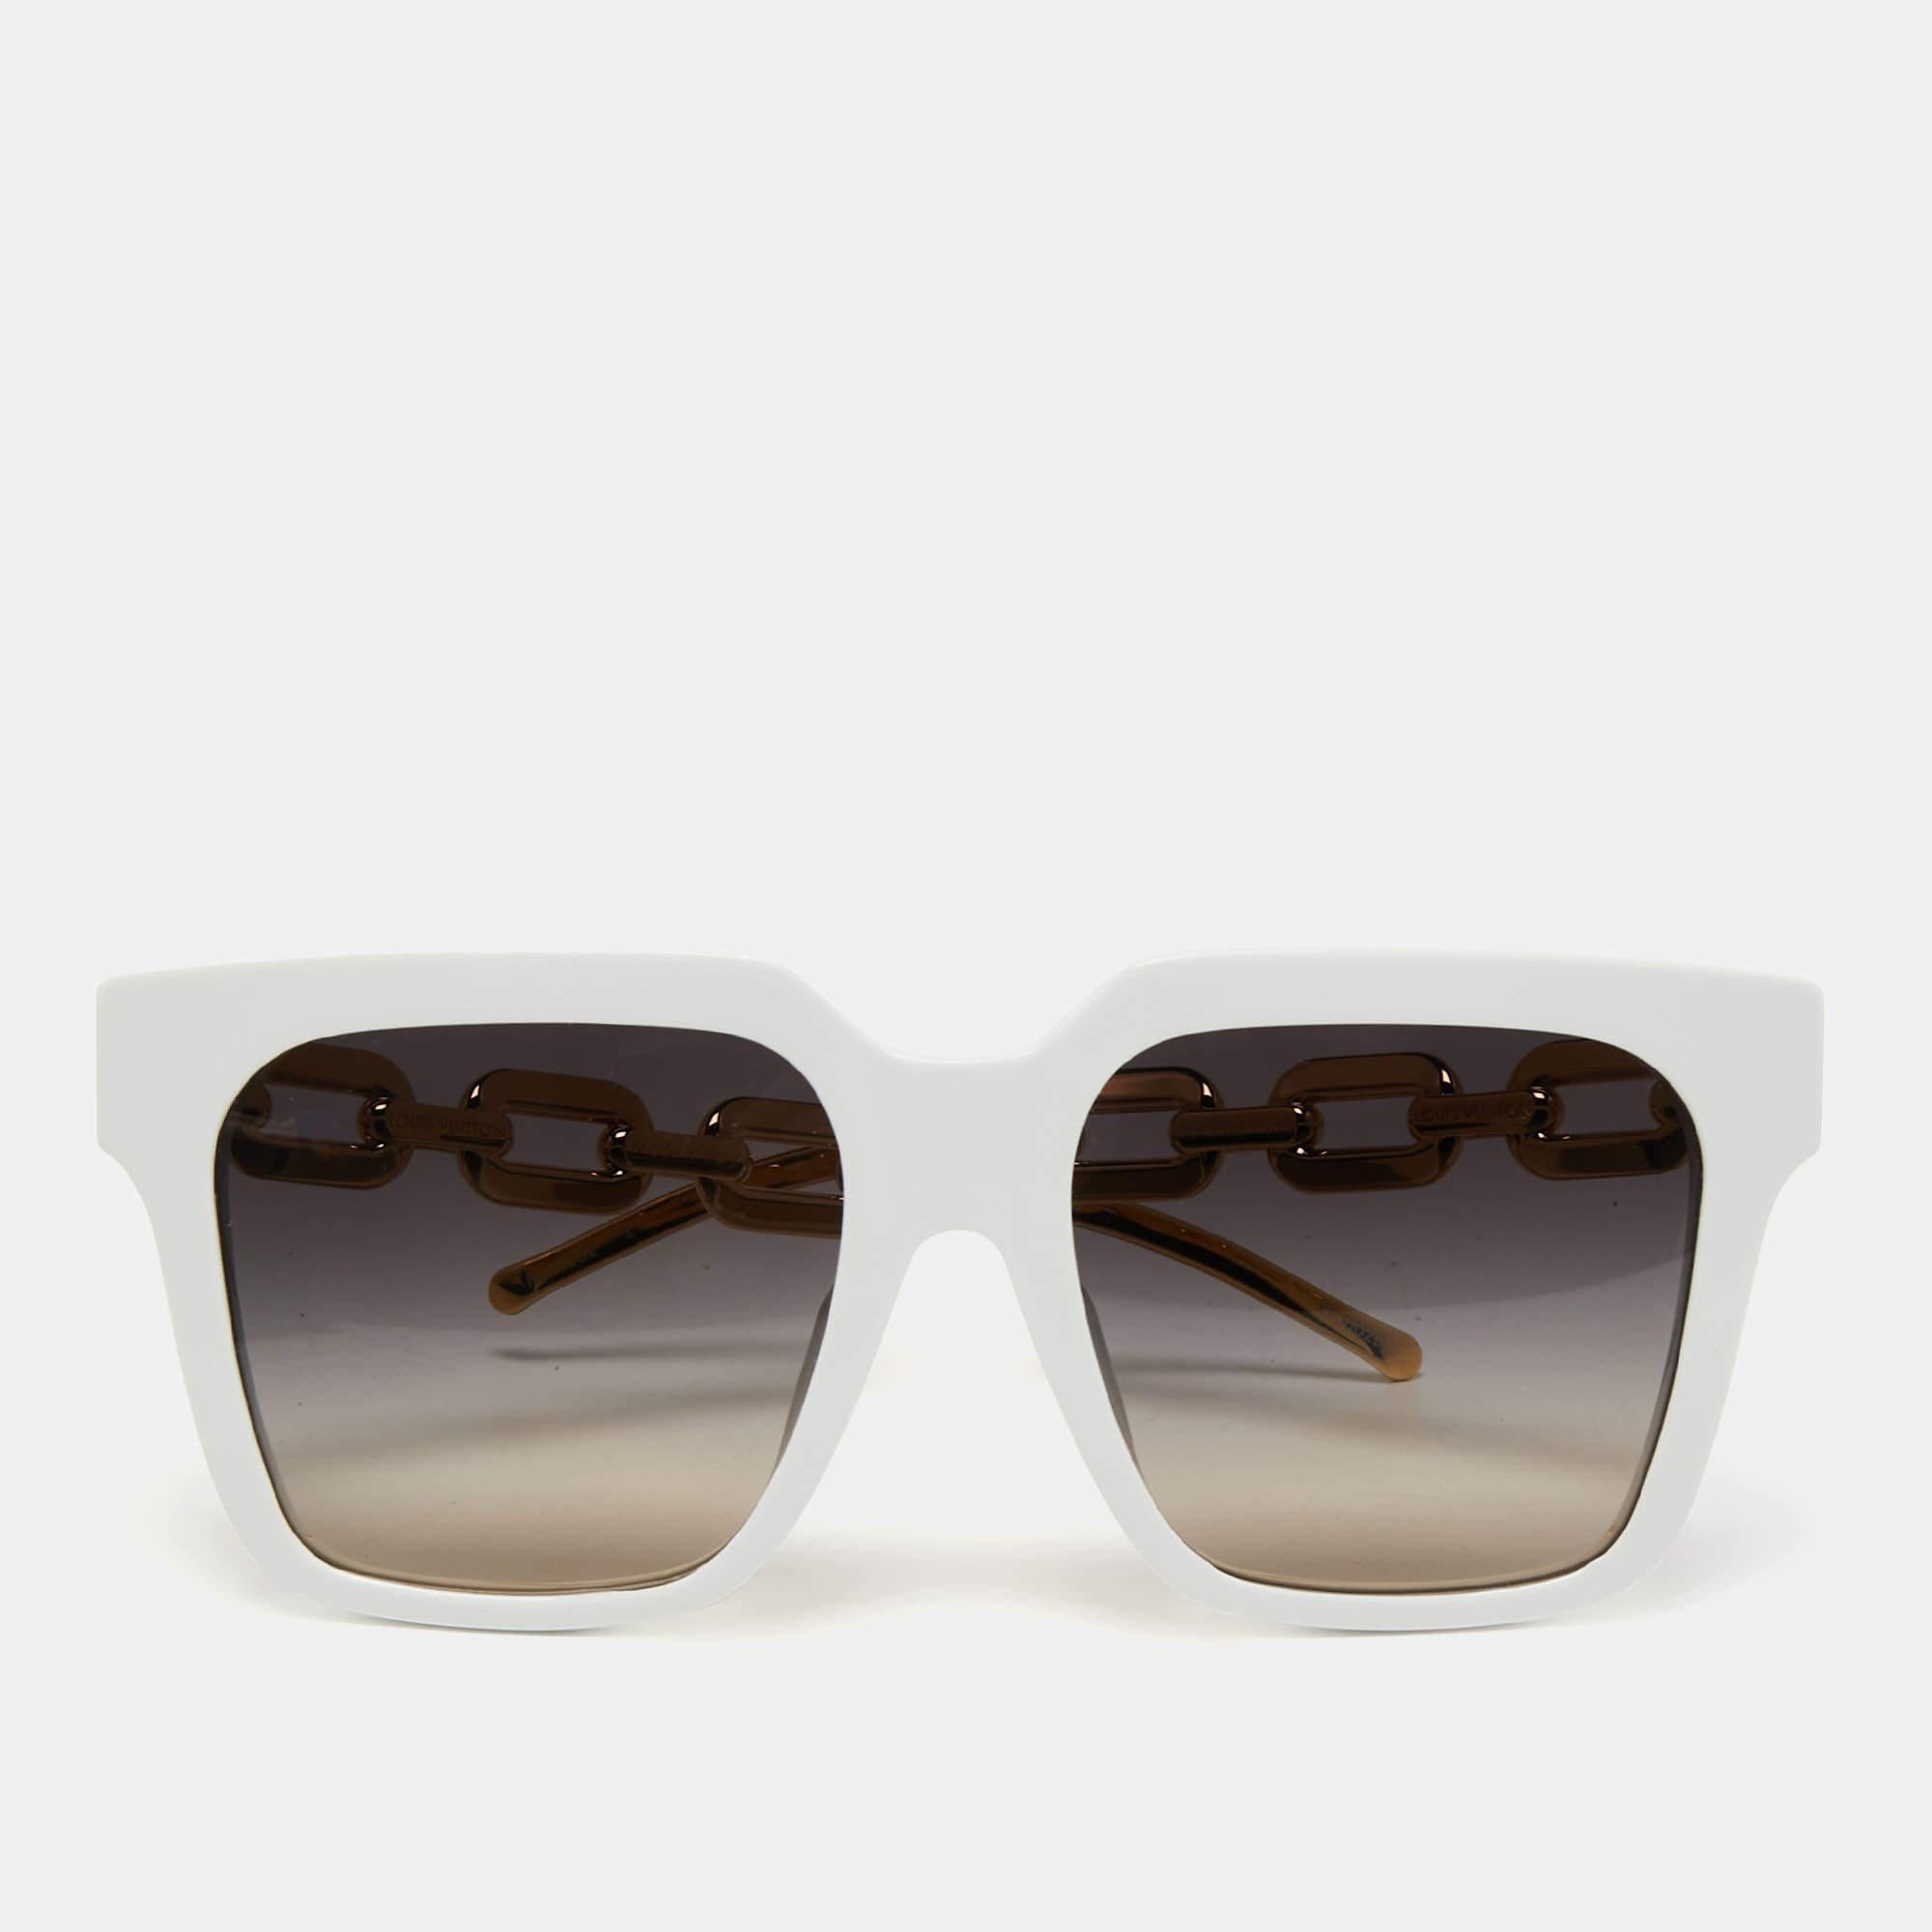 Louis Vuitton My LV Chain Pilot Sunglasses Gradient Brown Metal. Size E